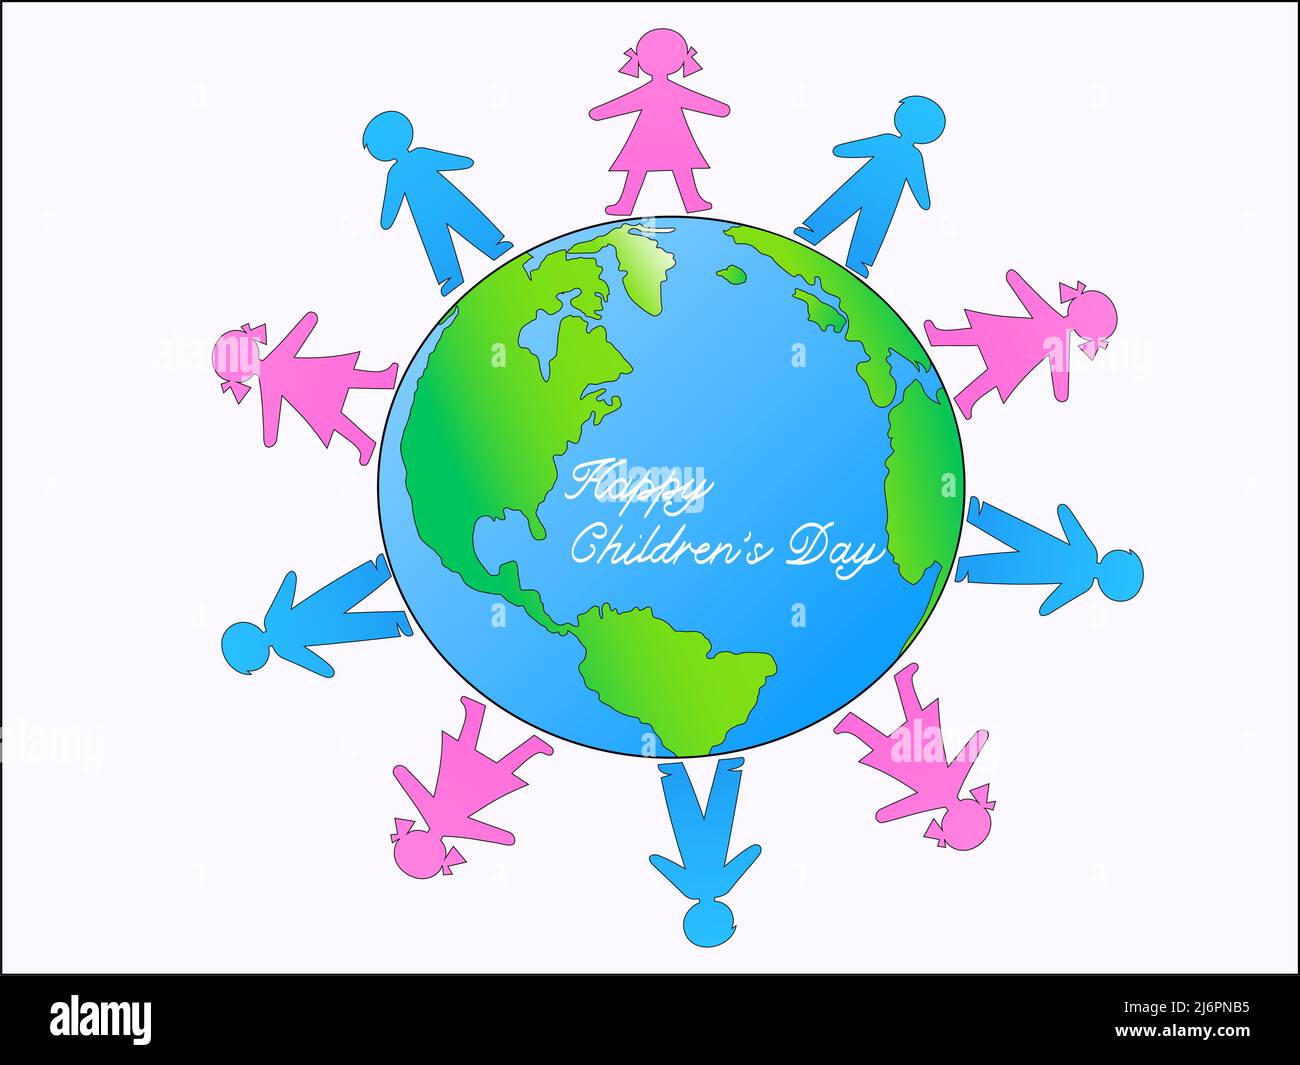 ilustración de niños alrededor del mundo y feliz día de los niños con letras en blanco, ilustración de stock Ilustración del Vector